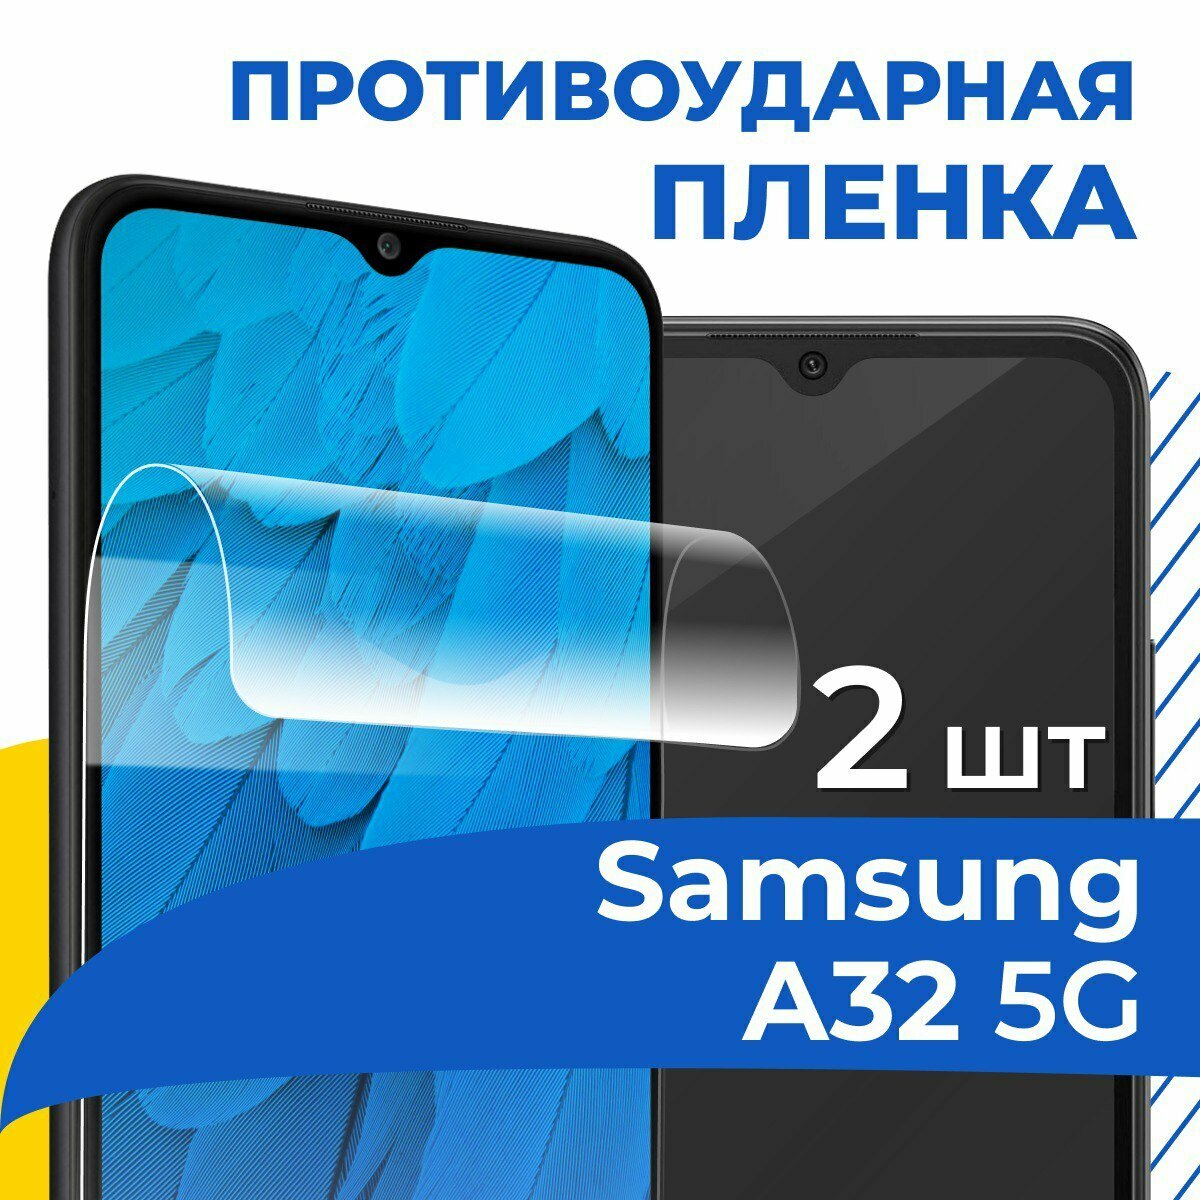 Комплект 2 шт. Гидрогелевая пленка для телефона Samsung Galaxy A32 5G / Противоударная защитная пленка на смартфон Самсунг А32 5Г / Самовосстанавливающаяся пленка